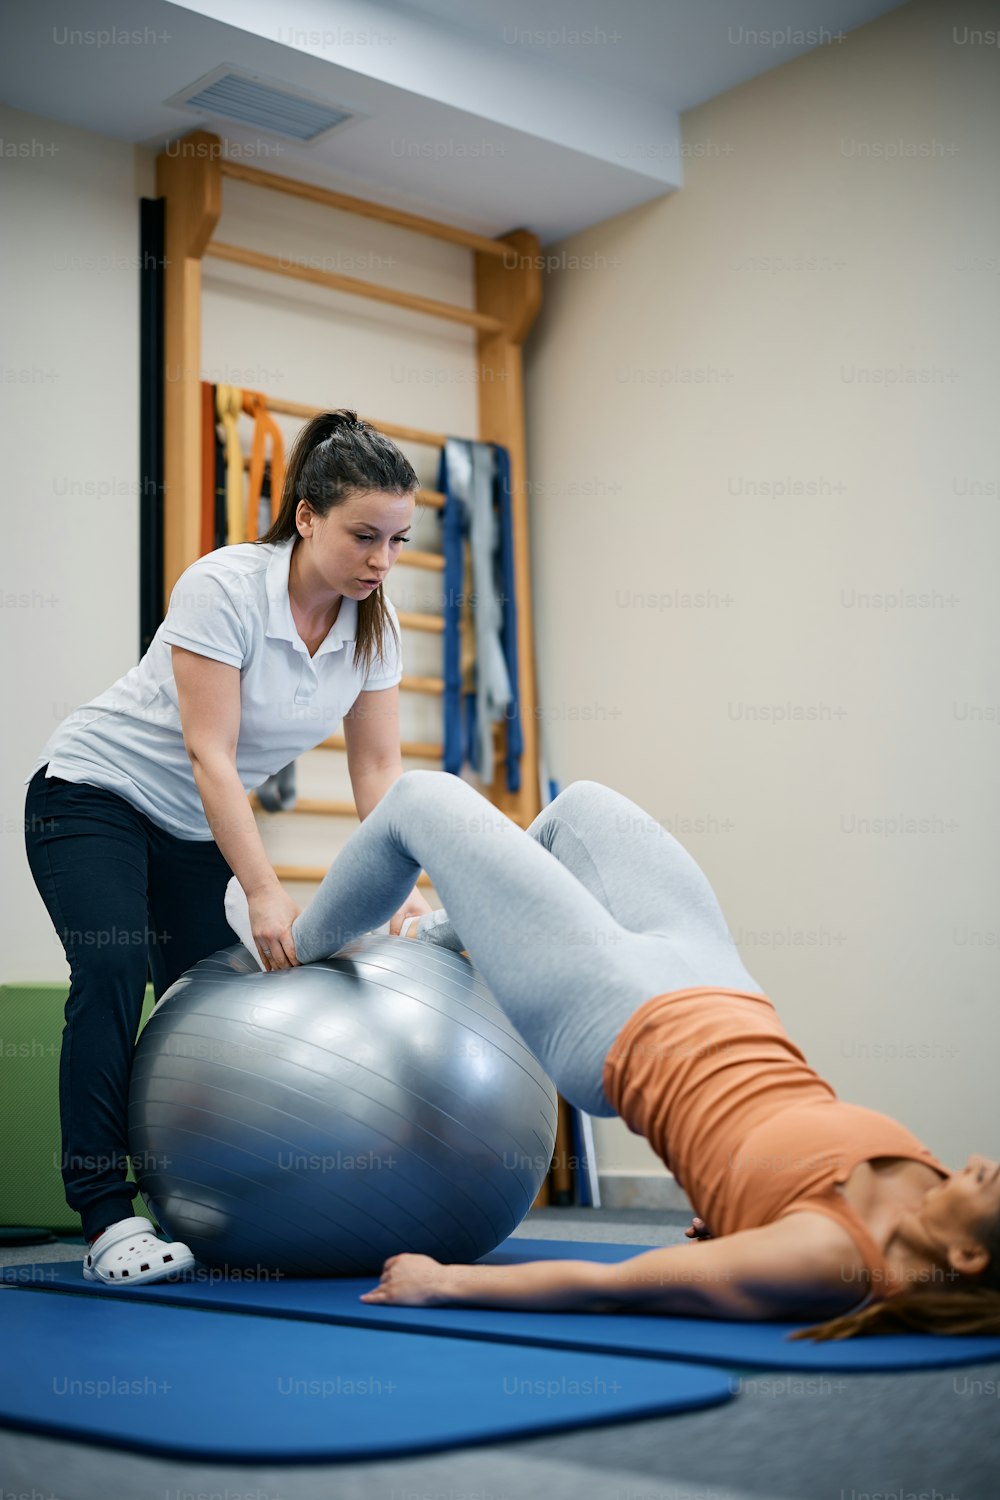 Kinésithérapeute utilisant un ballon de fitness lors d’un traitement thérapeutique avec une patiente dans un club de santé.